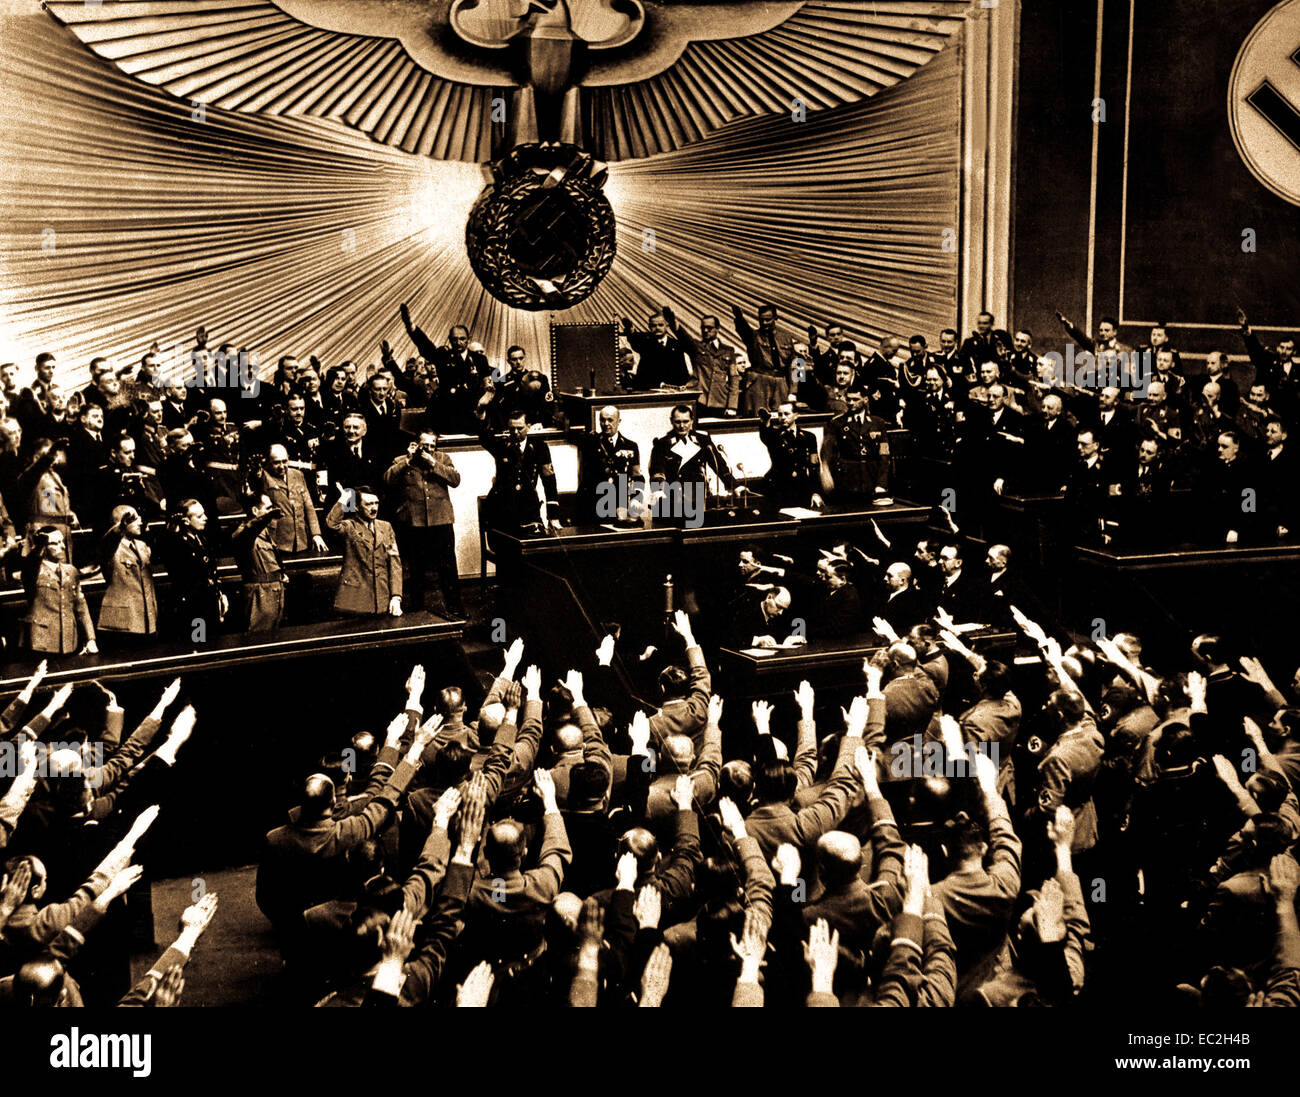 Hitler akzeptiert die ovationen der Reichstag nach der Bekanntgabe der 'friedlichen' Erwerb von Österreich. Es die Bühne zu Anhang der tschechoslowakischen Sudetenland, die zu einem Großteil von einer deutschsprachigen Bevölkerung bewohnt. Berlin, März 1938 Stockfoto